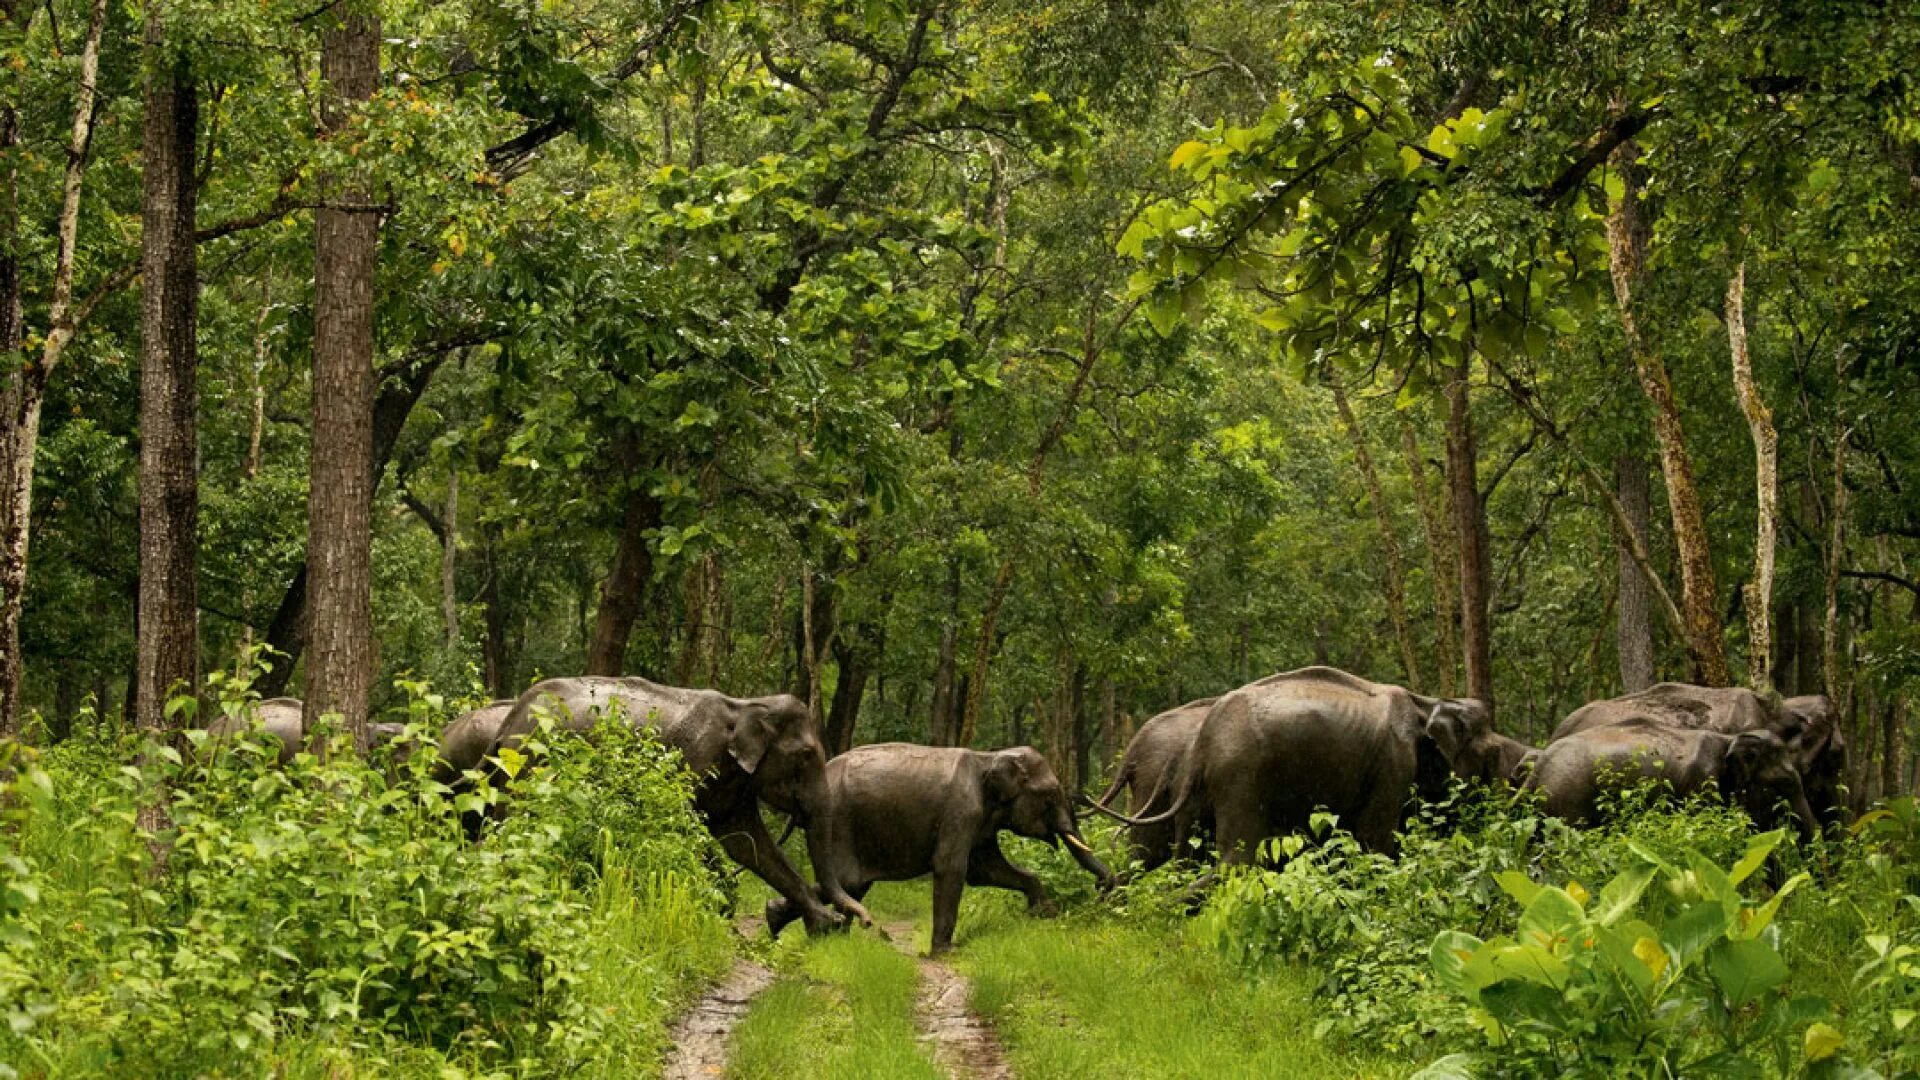 National wildlife. Национальный парк Перияр, Керала. Перияр Индия. Парк Перияр в Индии. Заповедник Перияр — Индия.